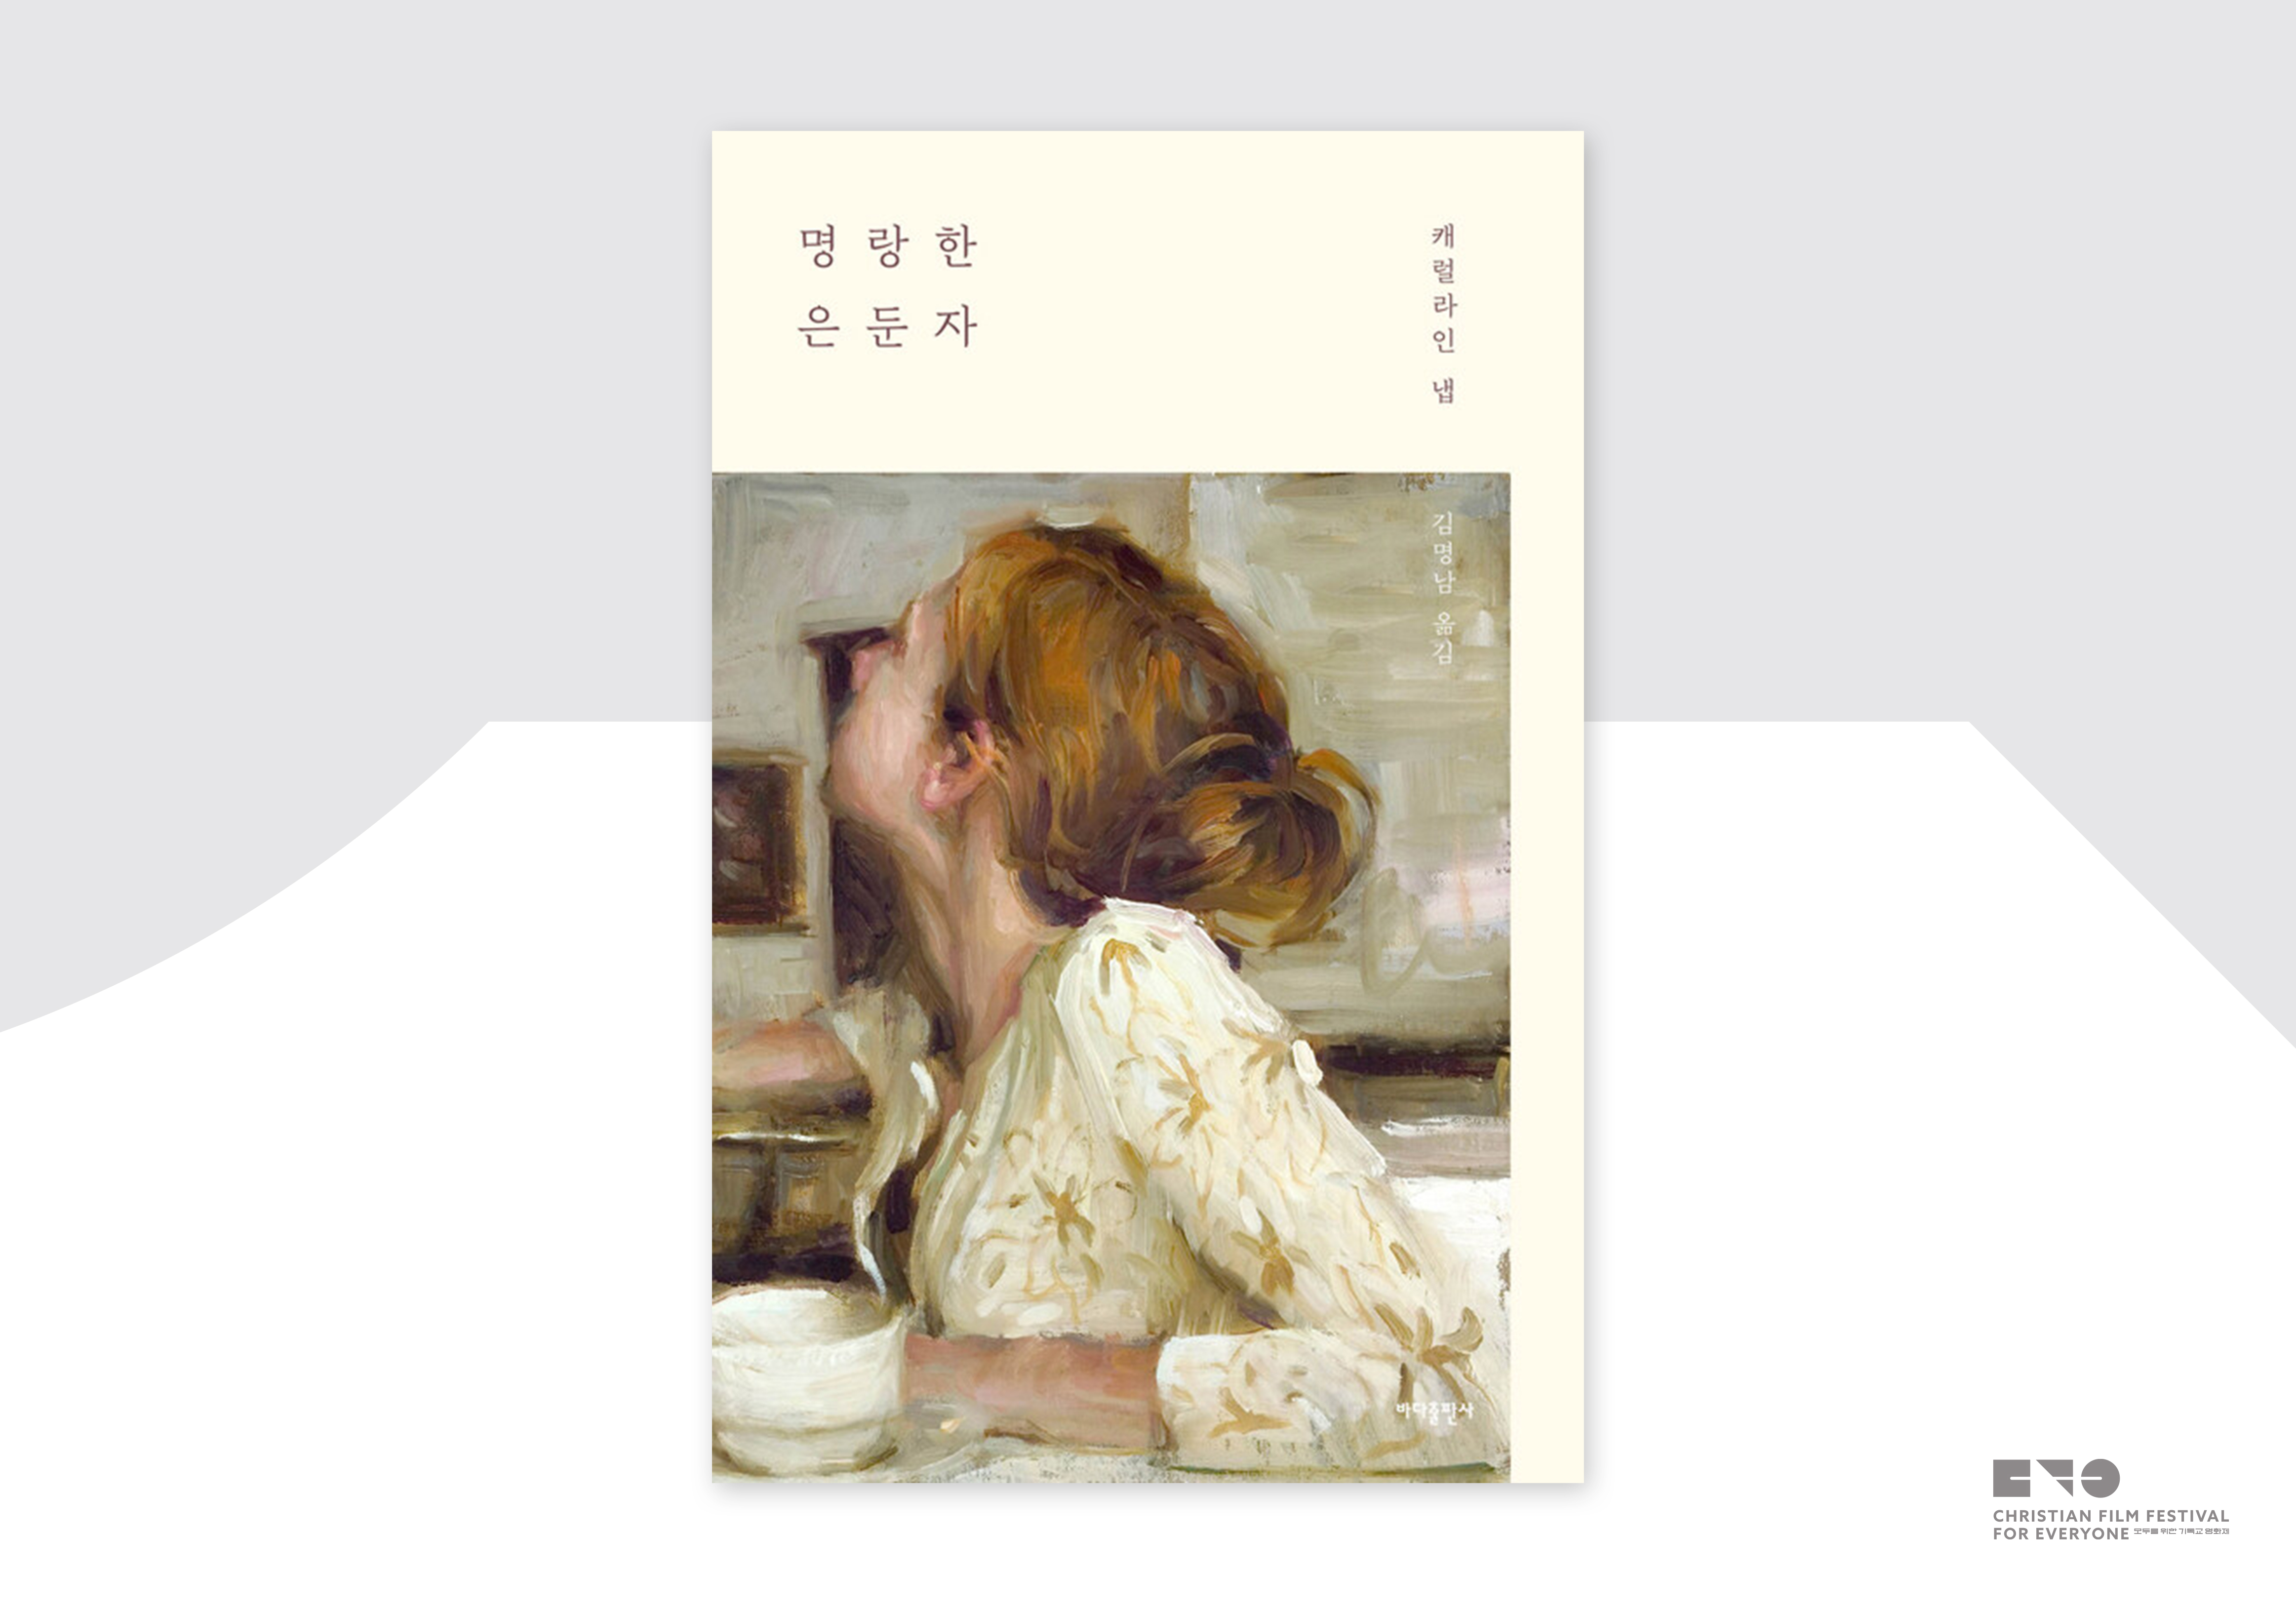 캐럴라인 냅, 『명랑한 은둔자』, 김명남 옮김, 바다출판사, 2020.